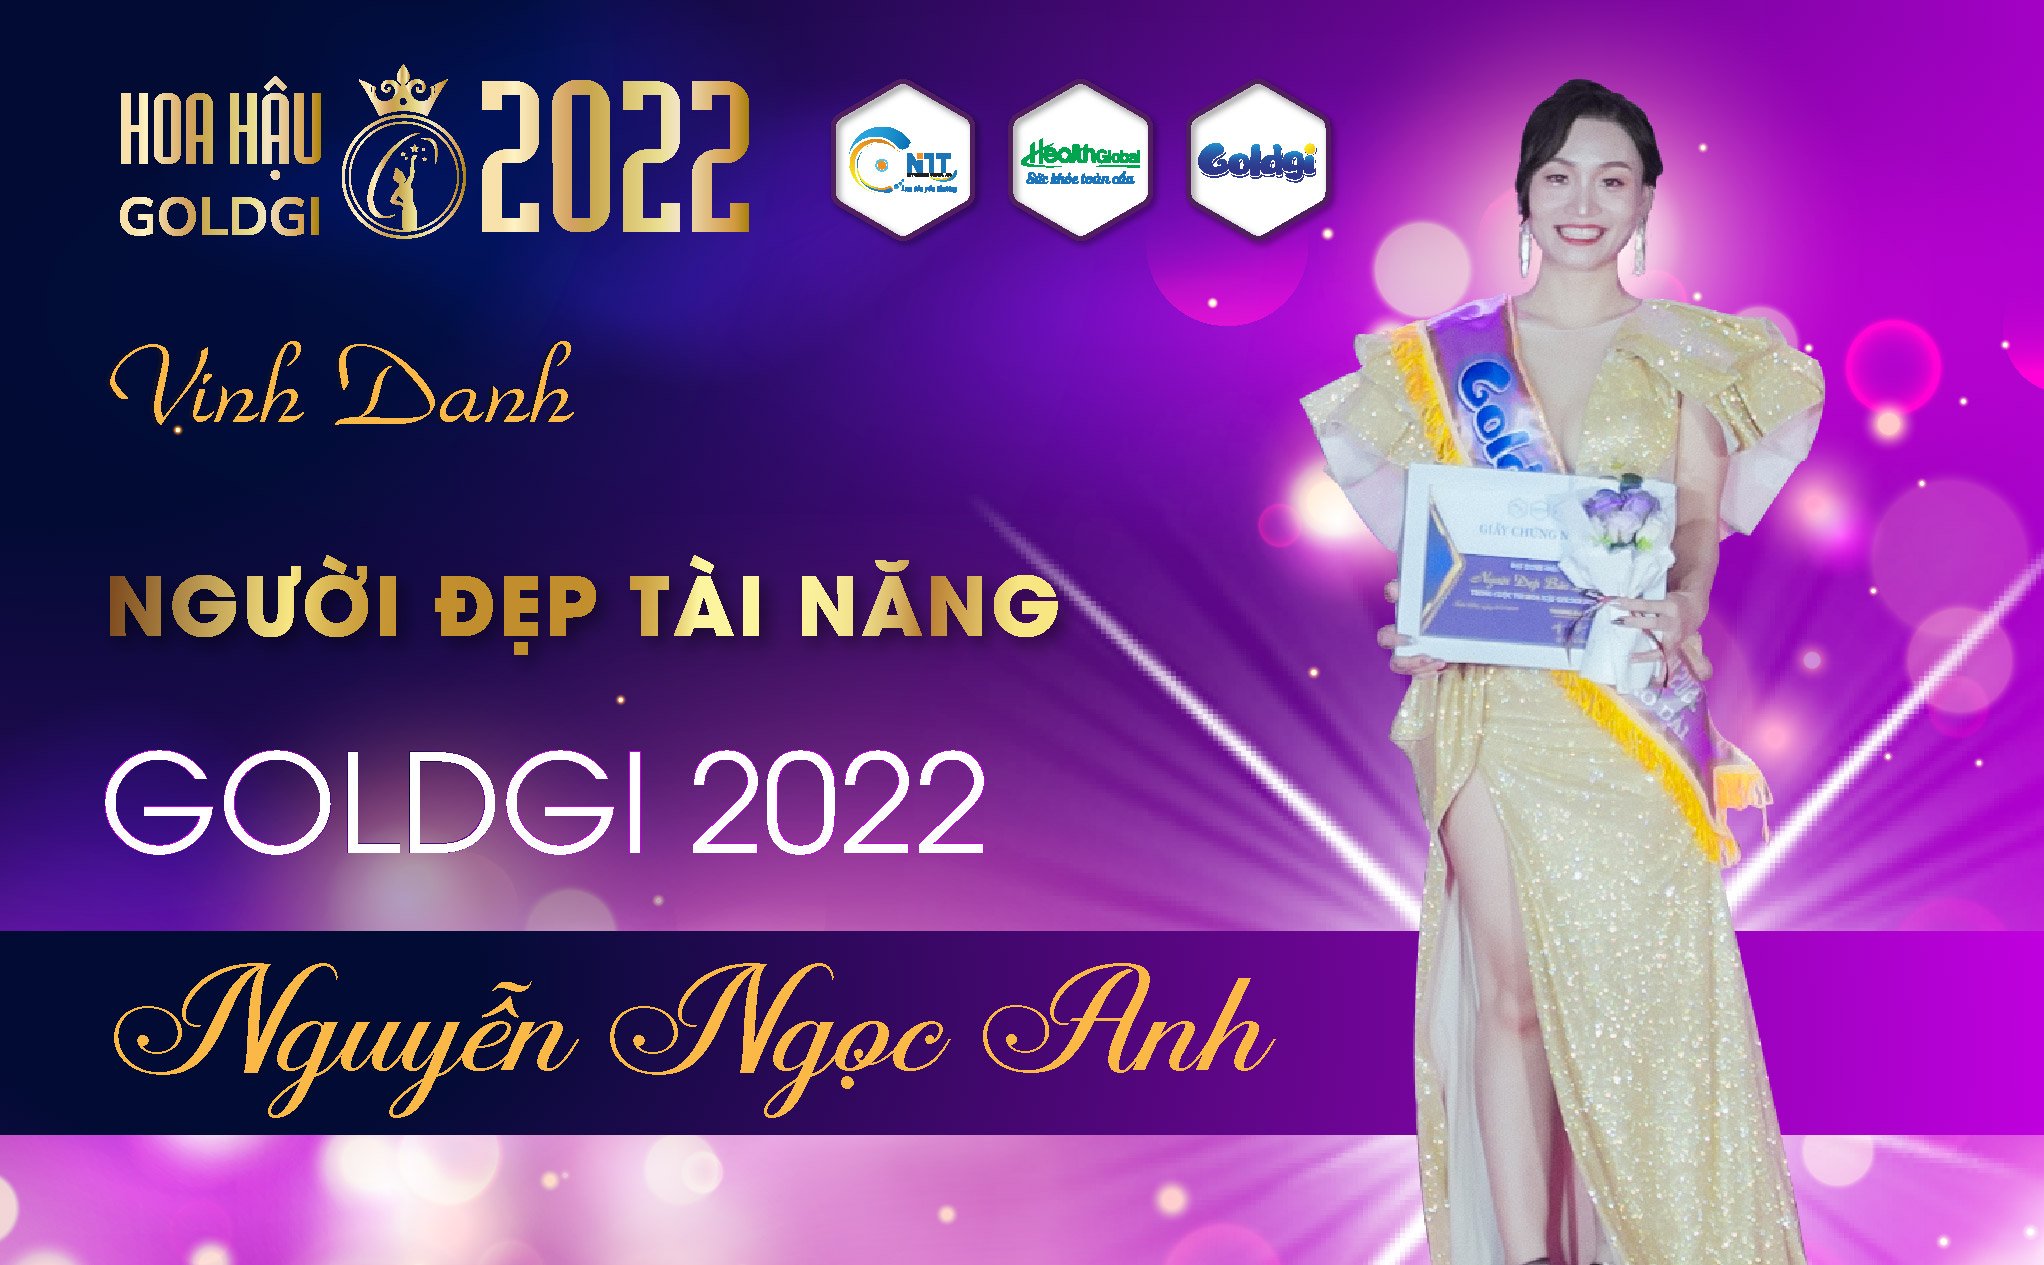 Giải thưởng người đẹp tài năng của Hoa hậu Goldgi 2022 gọi tên thí sinh 039 Nguyễn Ngọc Anh